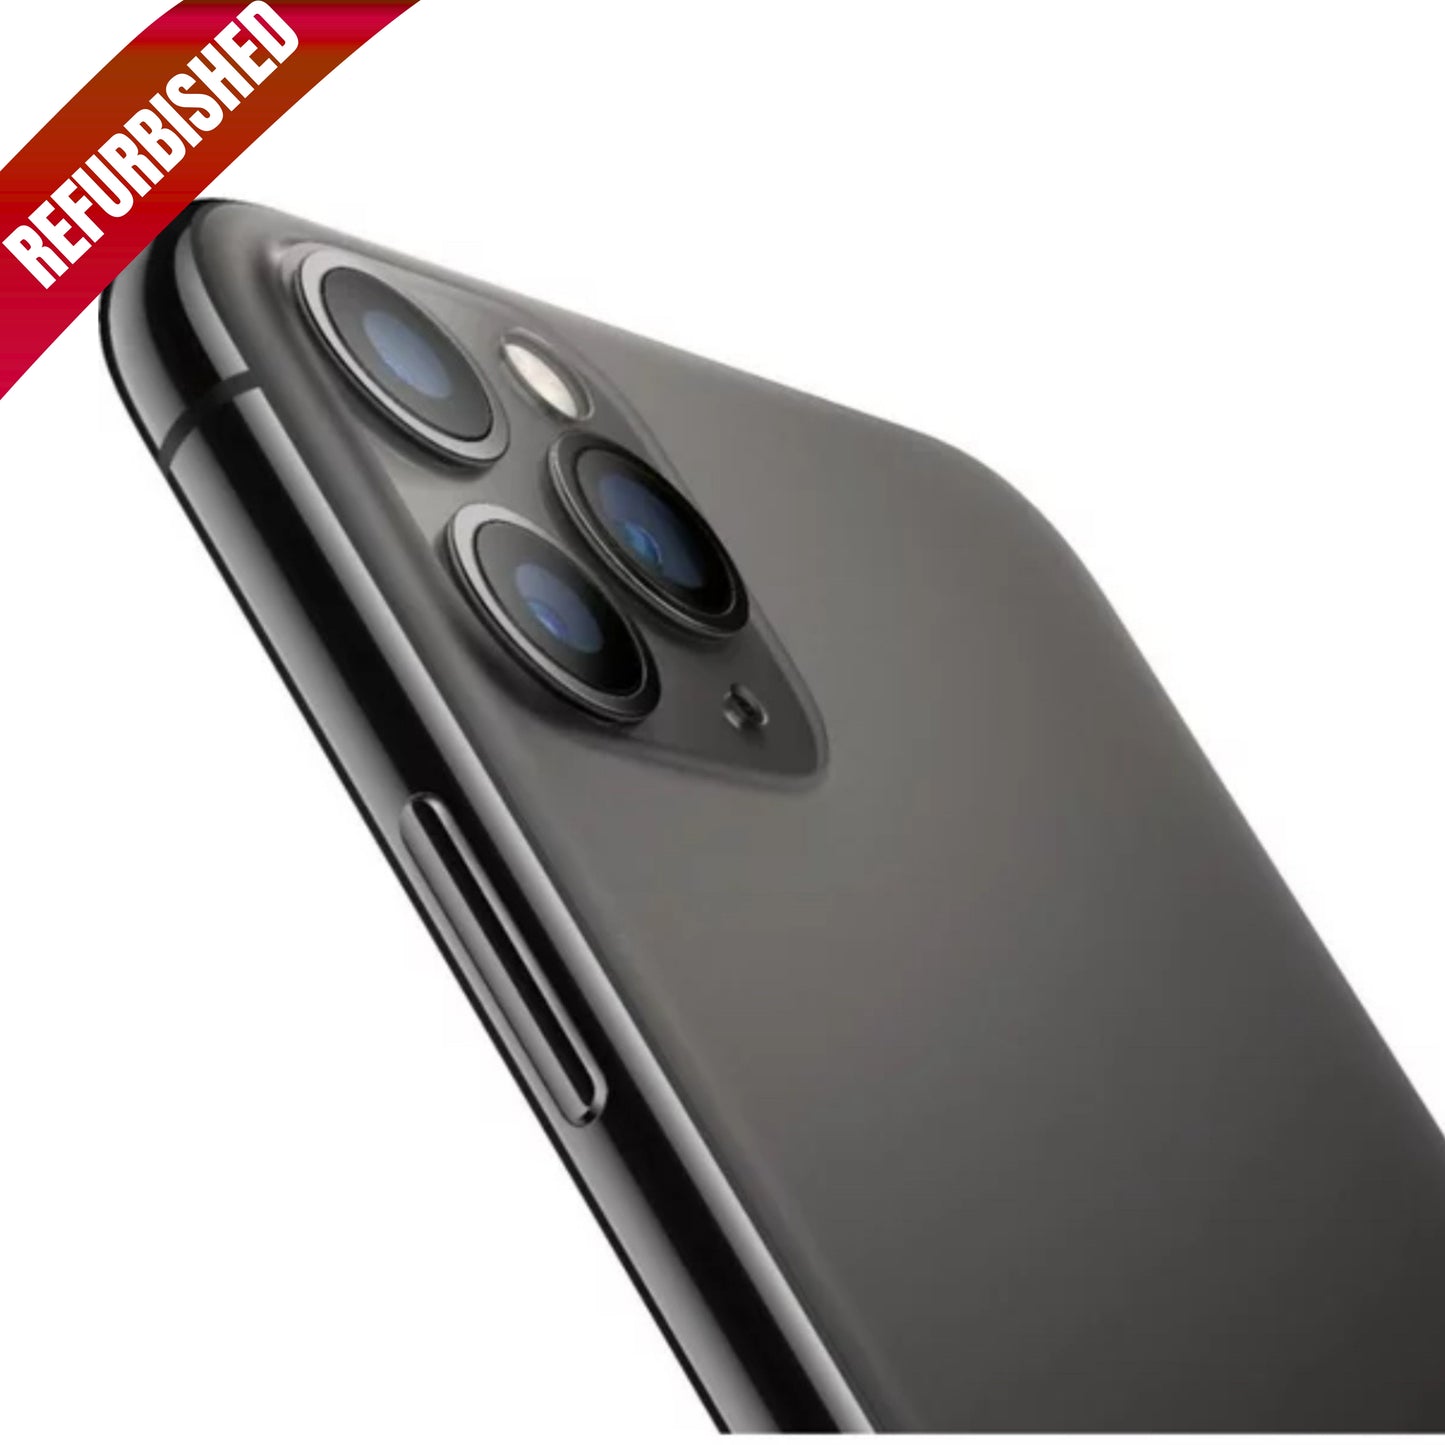 iPhone 11 Pro Max Gris Espacial 256GB (Desbloqueado) Reacondicionado